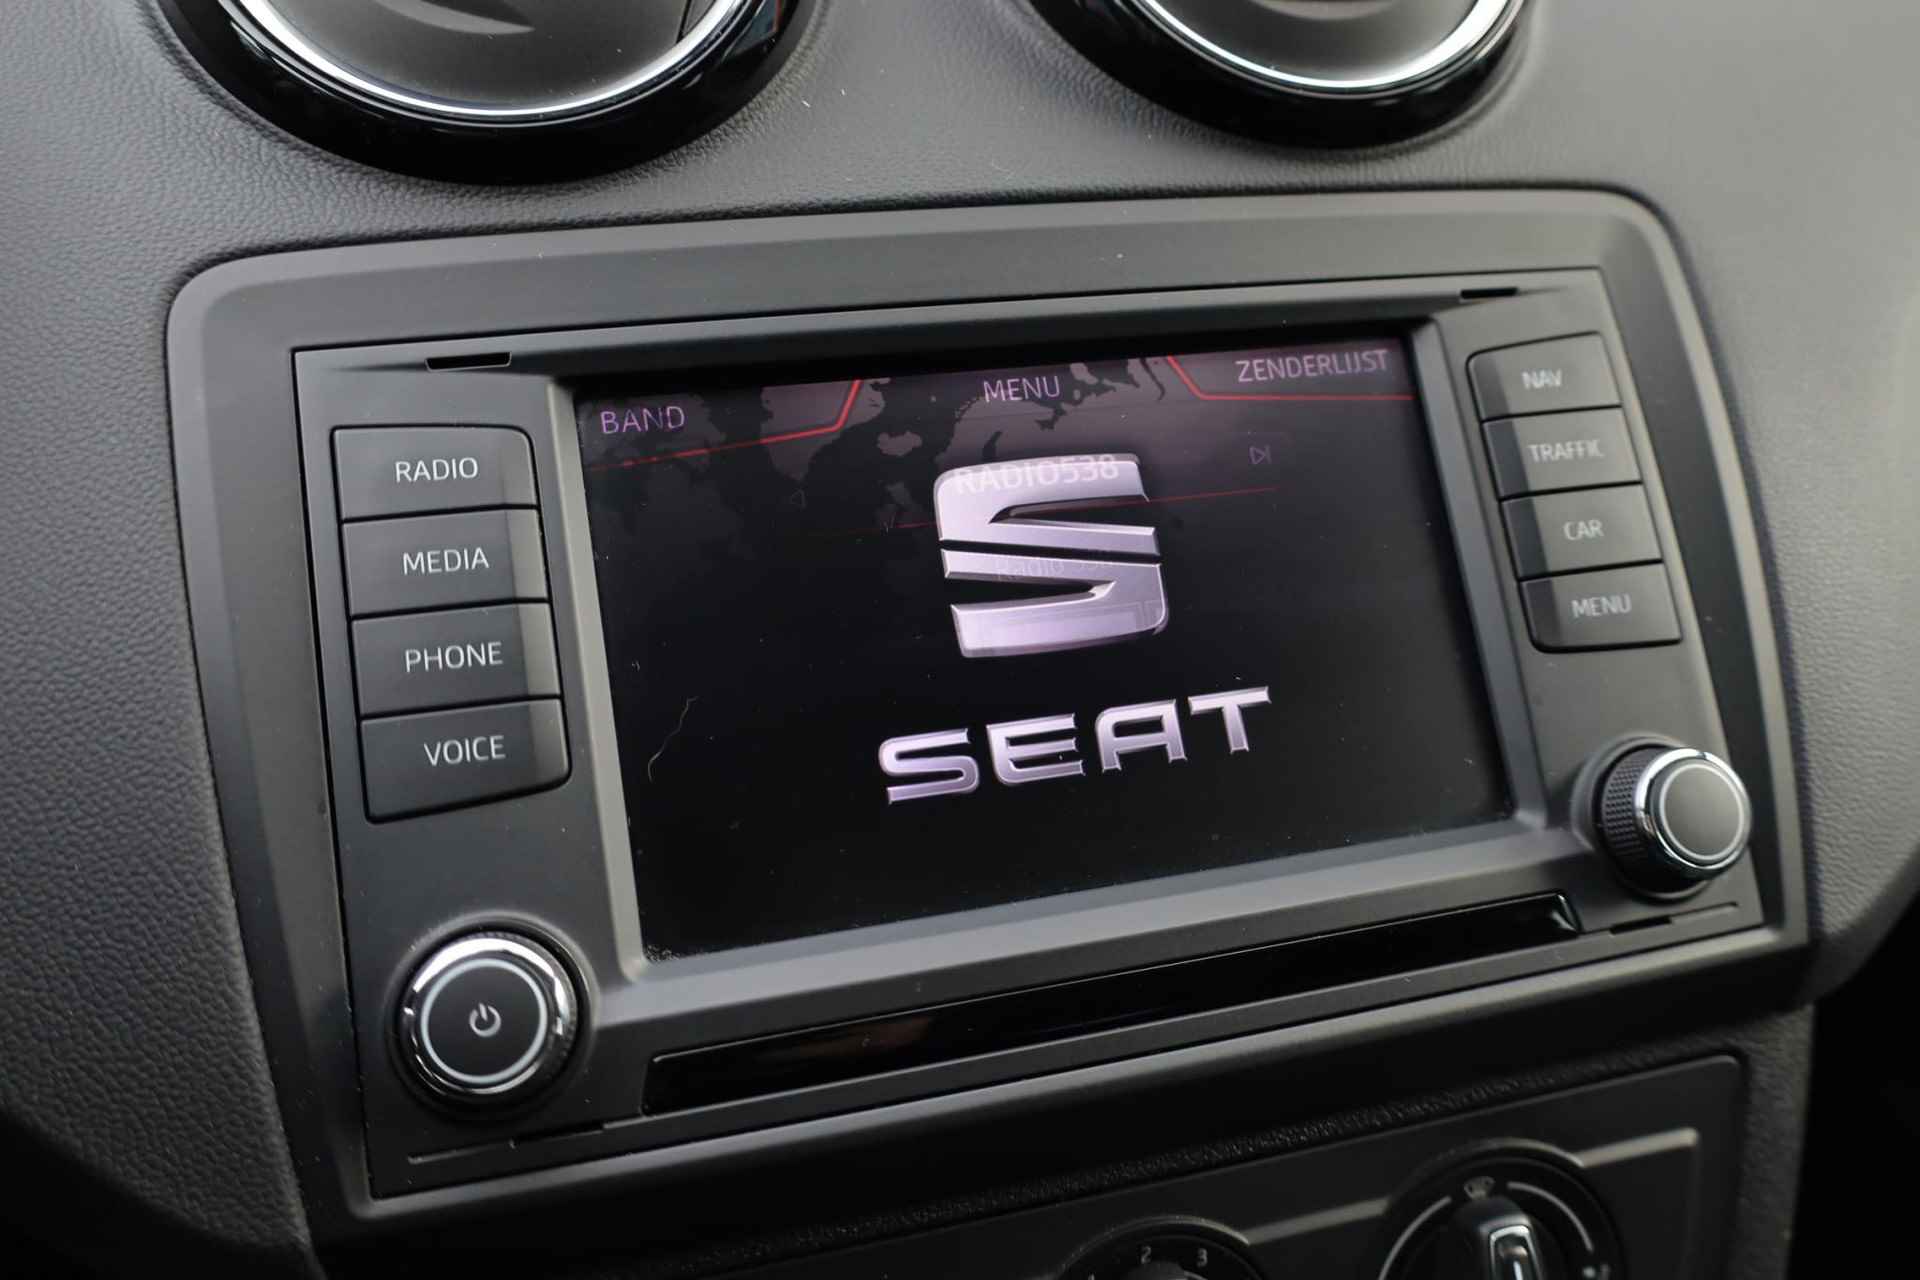 SEAT Ibiza 1.0 EcoTSI Style Connect 95PK / 70kW, 16" LMV zwart, navigatie, cruise control, parkeersensoren, multifunctioneel lederen stuurwiel, licht sensor, zwarte spiegelkappen + zwarte accenten, spiegels elektrisch inklapbaar - 21/38